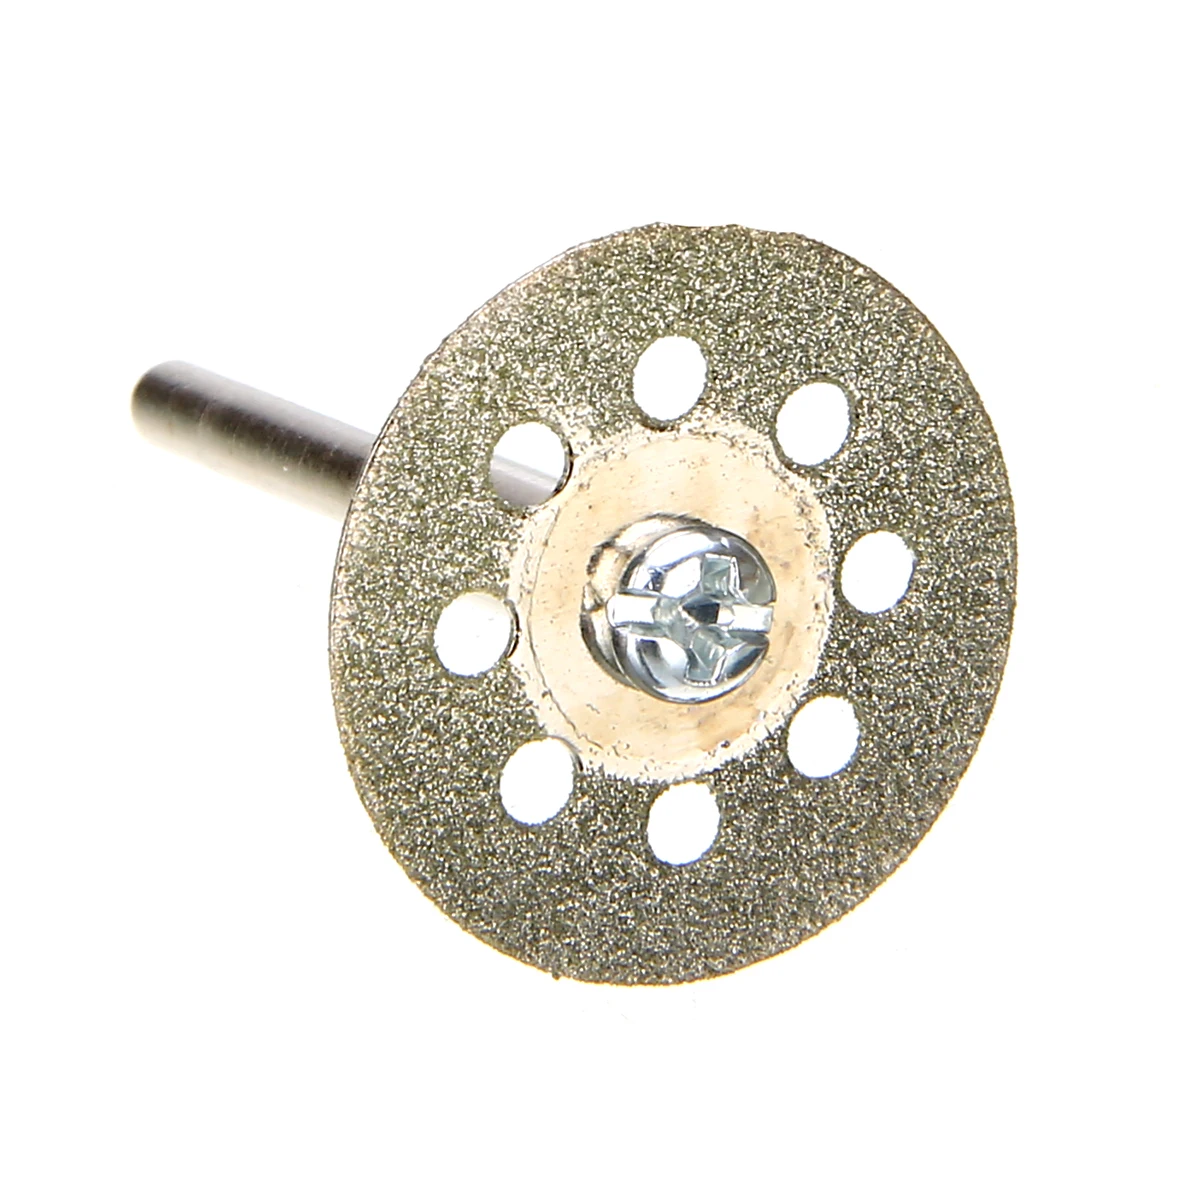 5 шт. 22 мм алмазный режущий диск абразивный диск комплект с 1 шт. оправка для камень, древесина пластик роторная дрель инструмент аксессуар